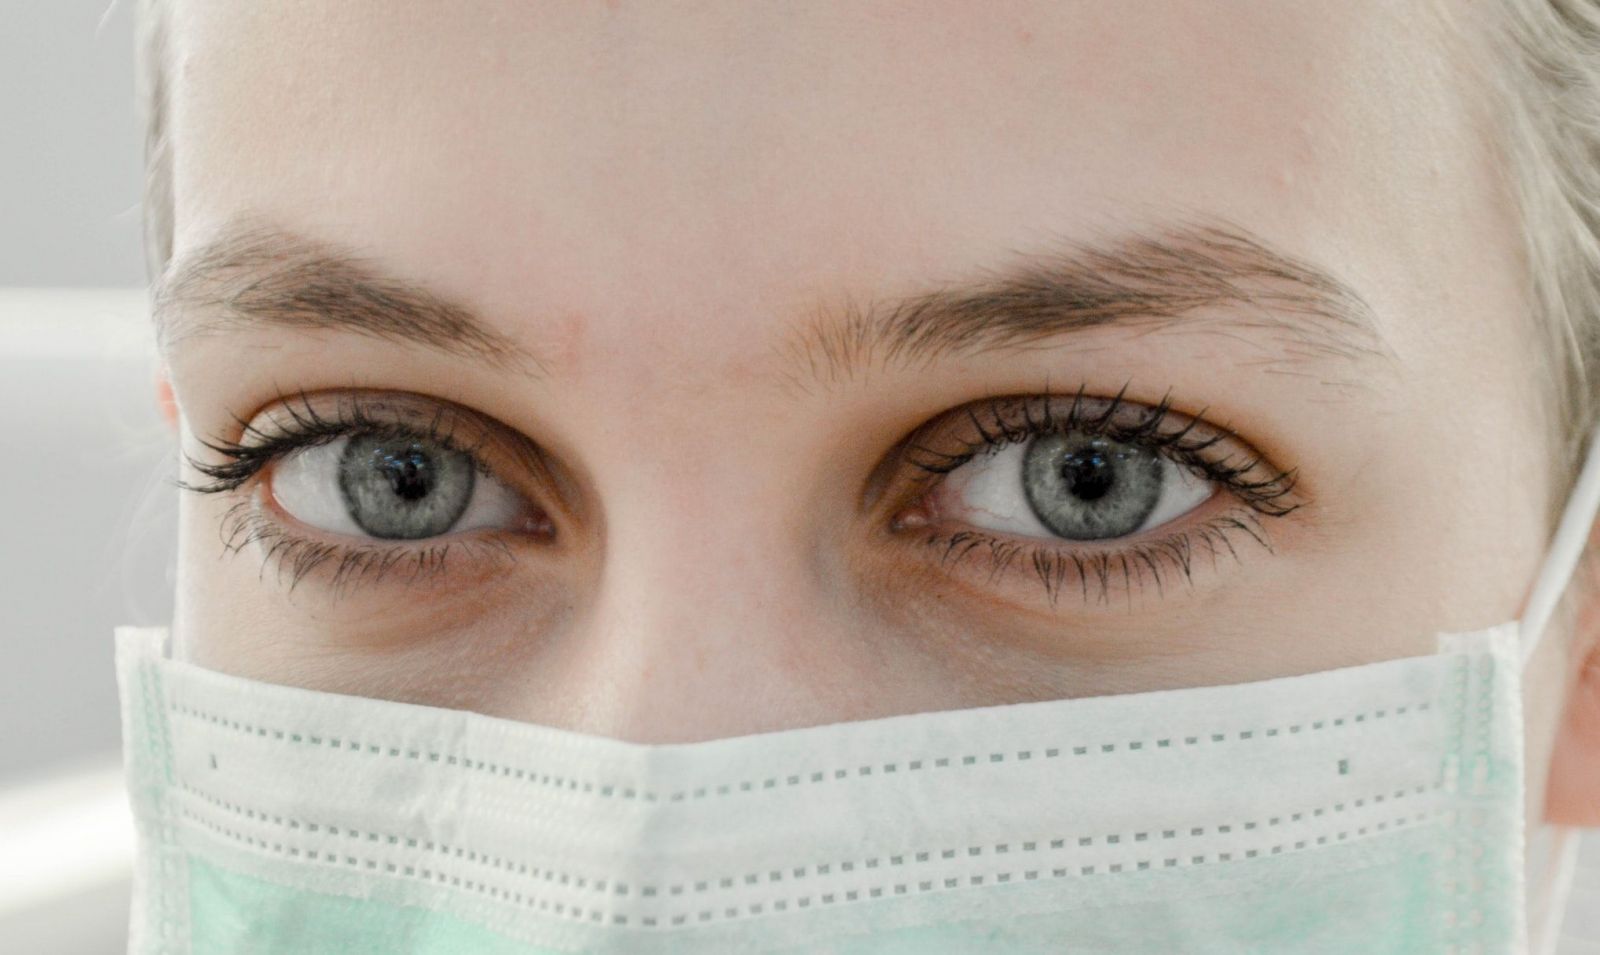 Koronavírus môže spôsobiť aj problémy s očami, tvrdia odborníci. Chrániť sa vraj môžeš slnečnými okuliarmi